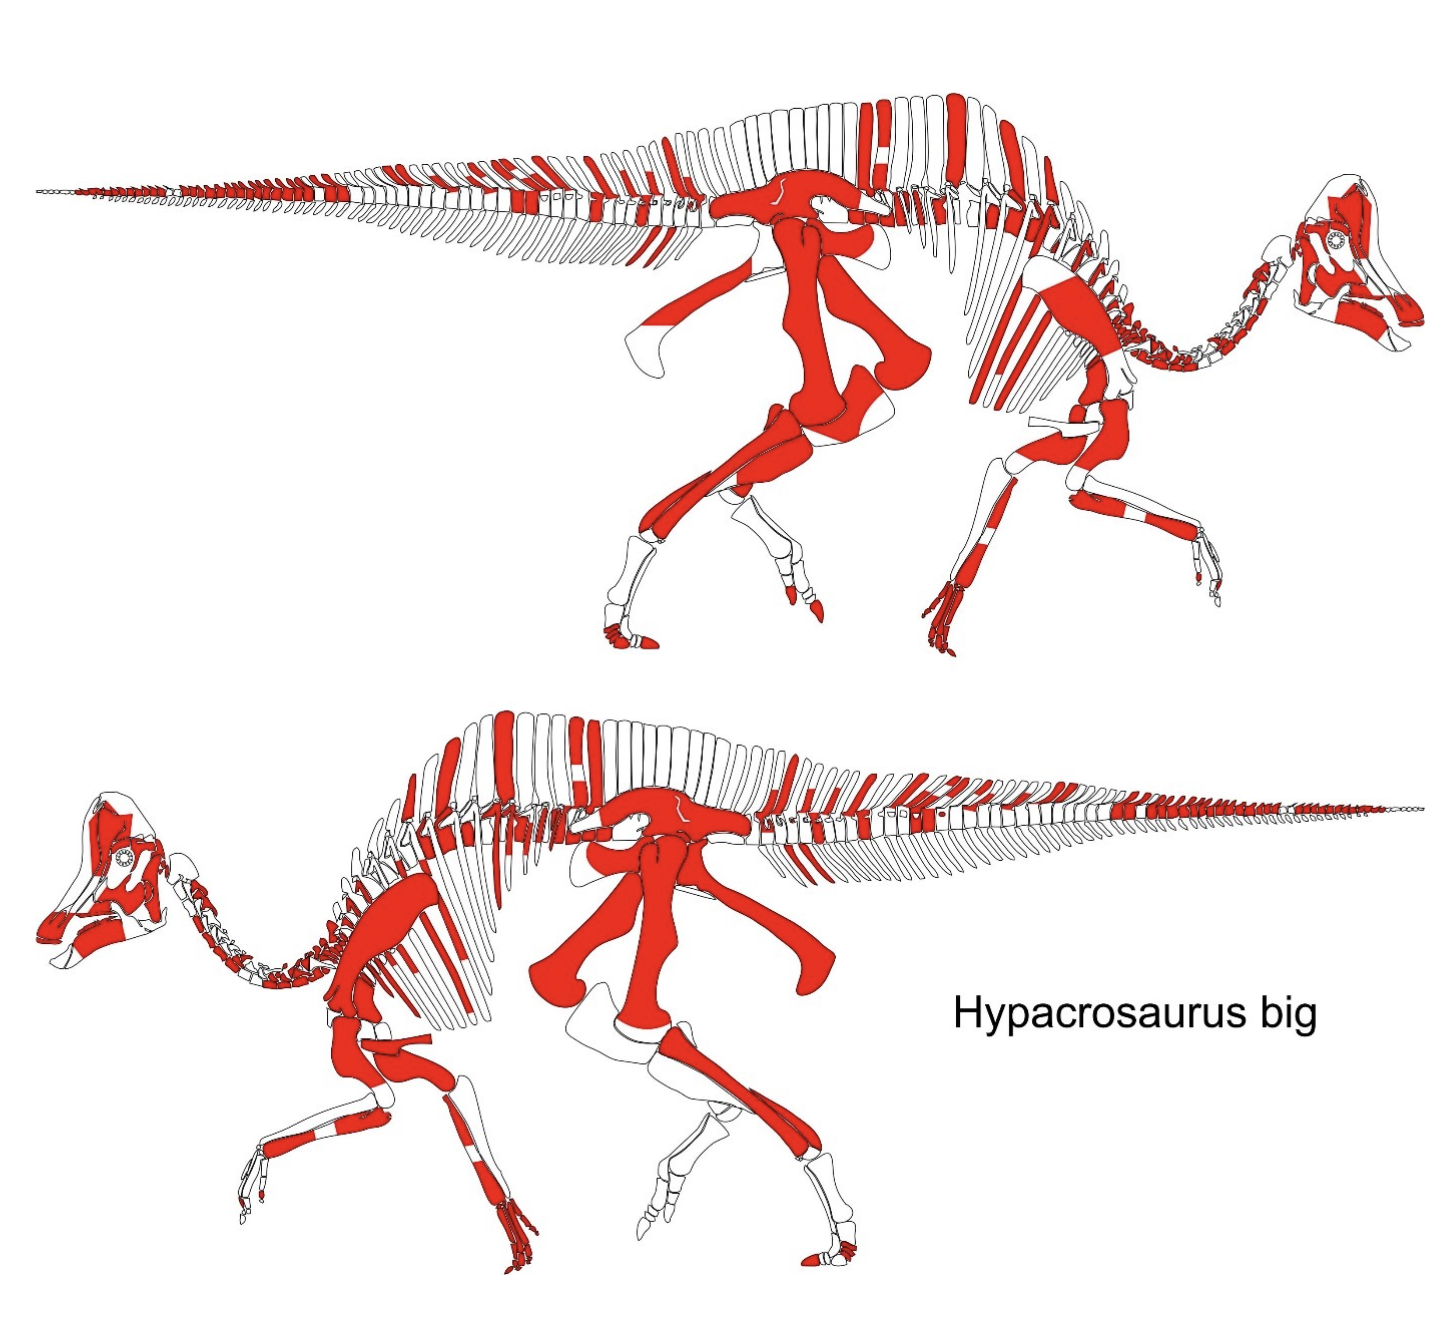 illustrasjon av skjelett av dinosauren hypacrosaurus. 70 % er markert i rødt og indikerer de delene av skjelettet som er ekte.